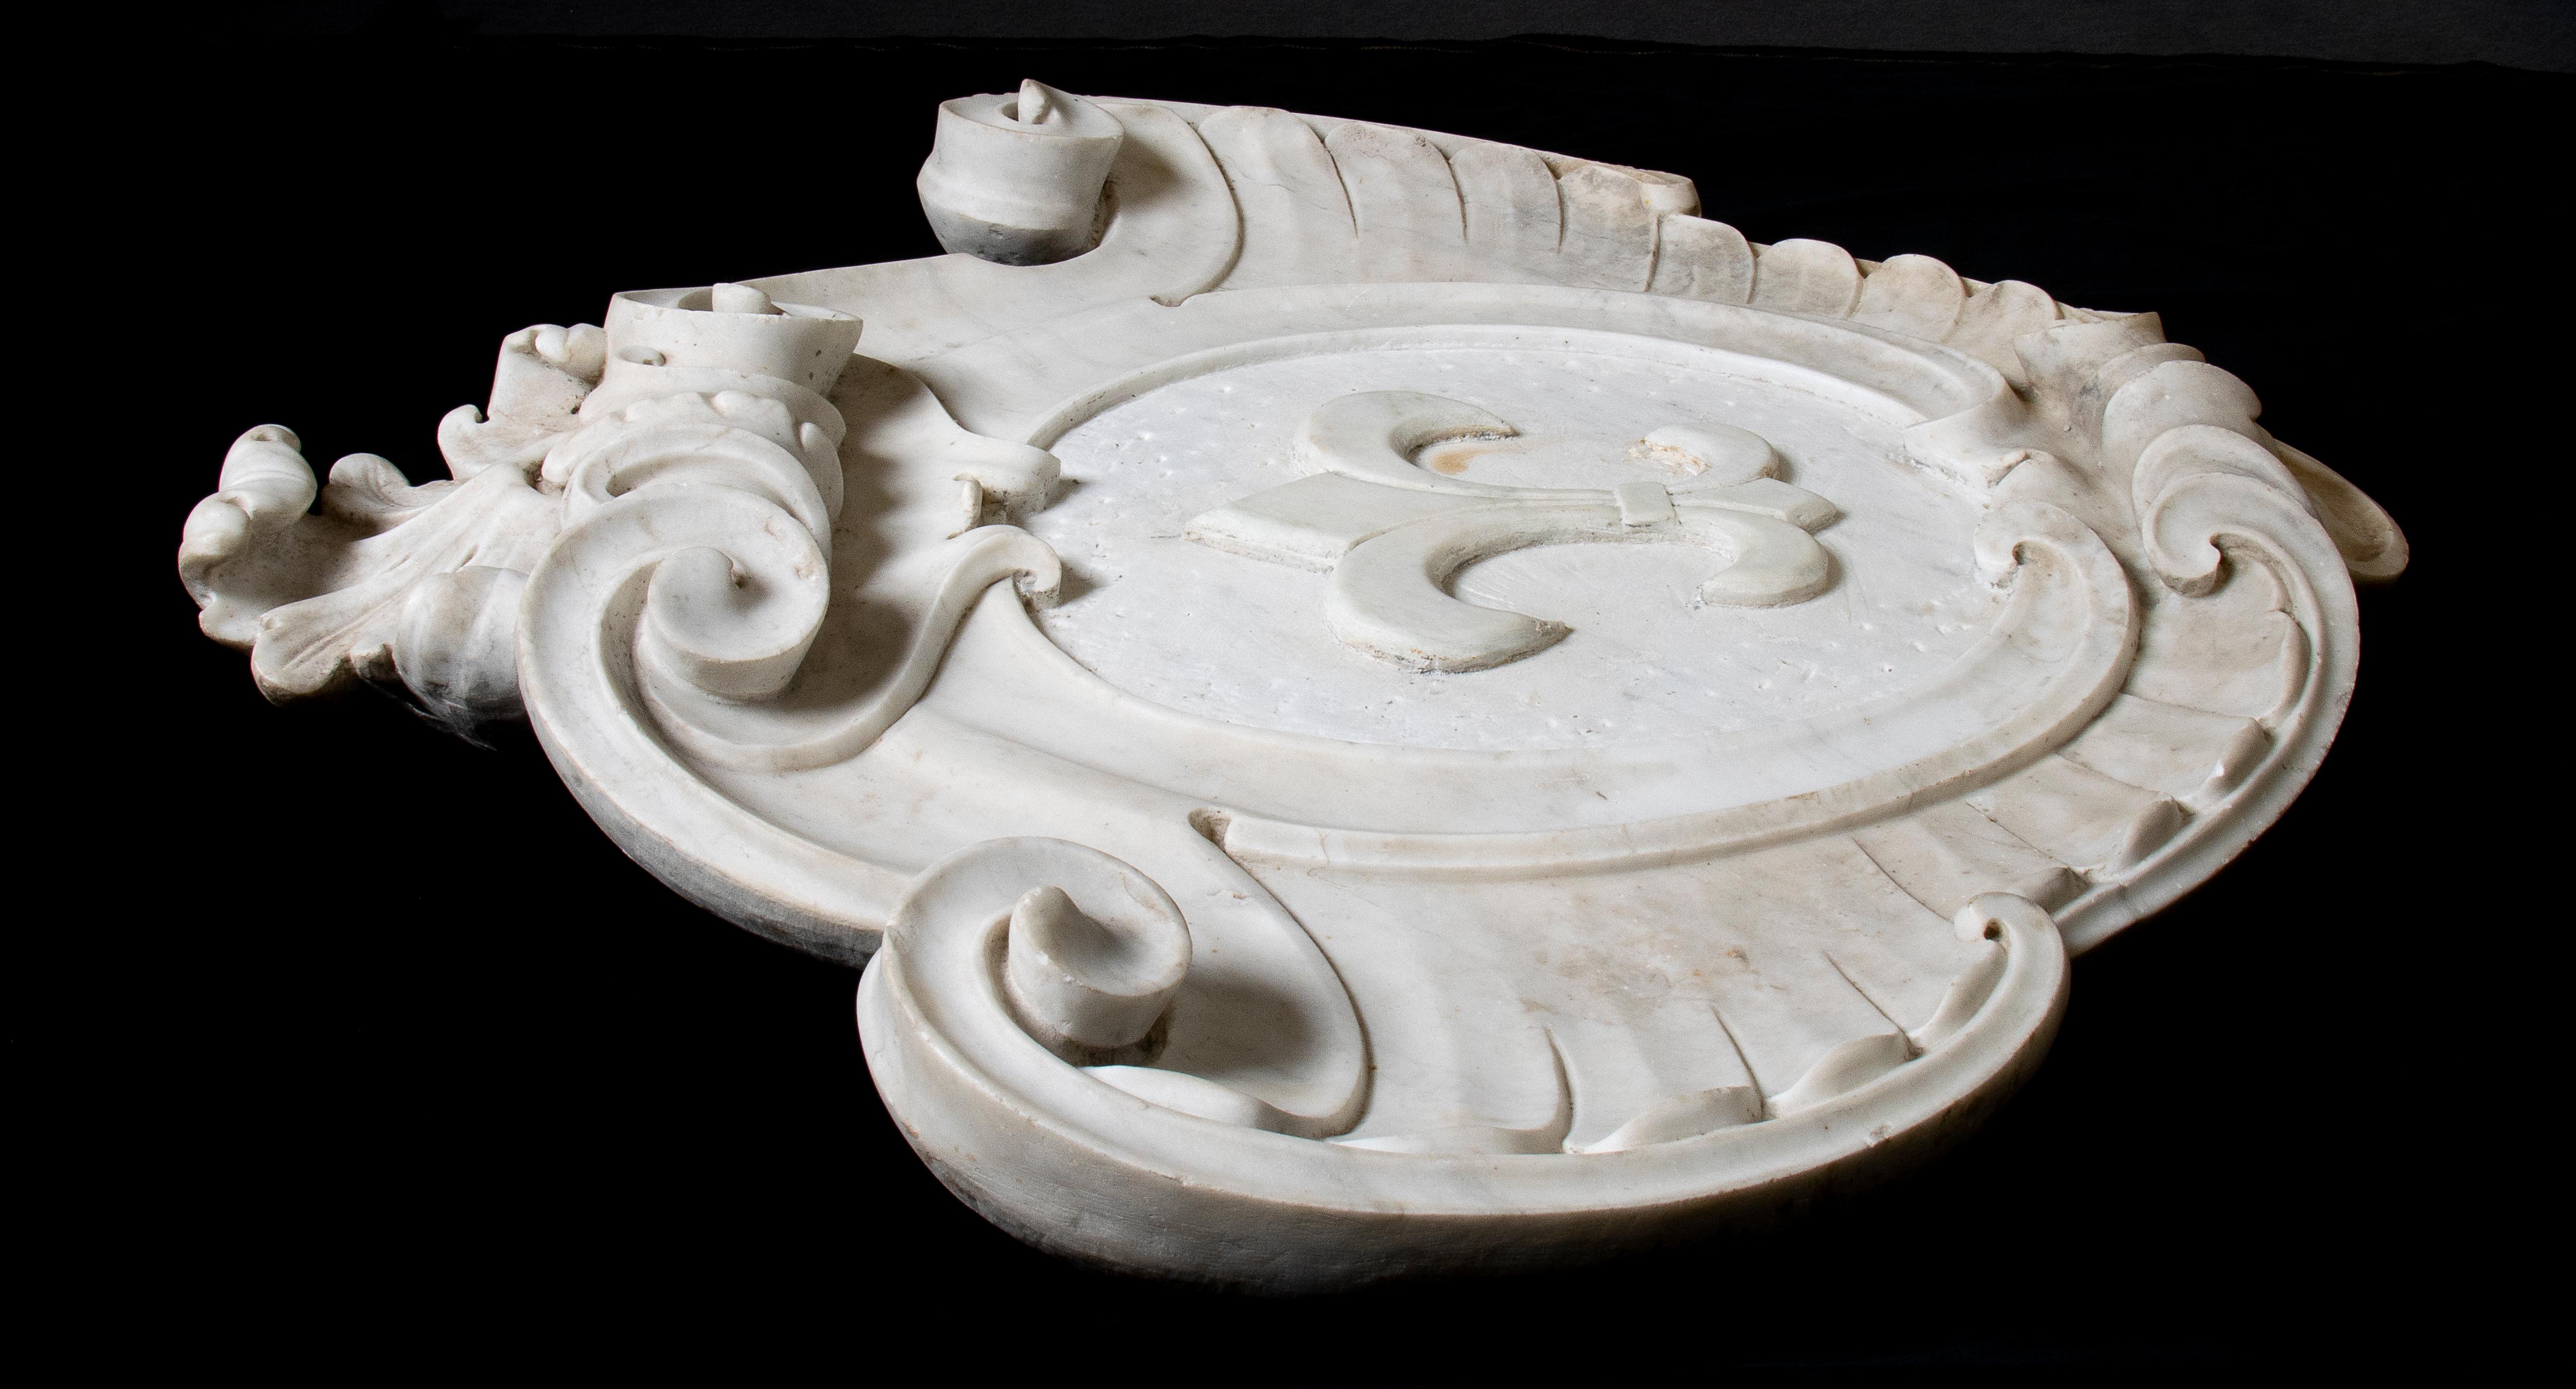 Un très intéressant Coates, sculpté en marbre blanc avec une structure symétrique et une décoration à double rouleau ainsi que des sculptures de feuilles d'acanthe. Avec représentation centrale d'une fleur de lys dans les armoiries.
La fleur de lis,